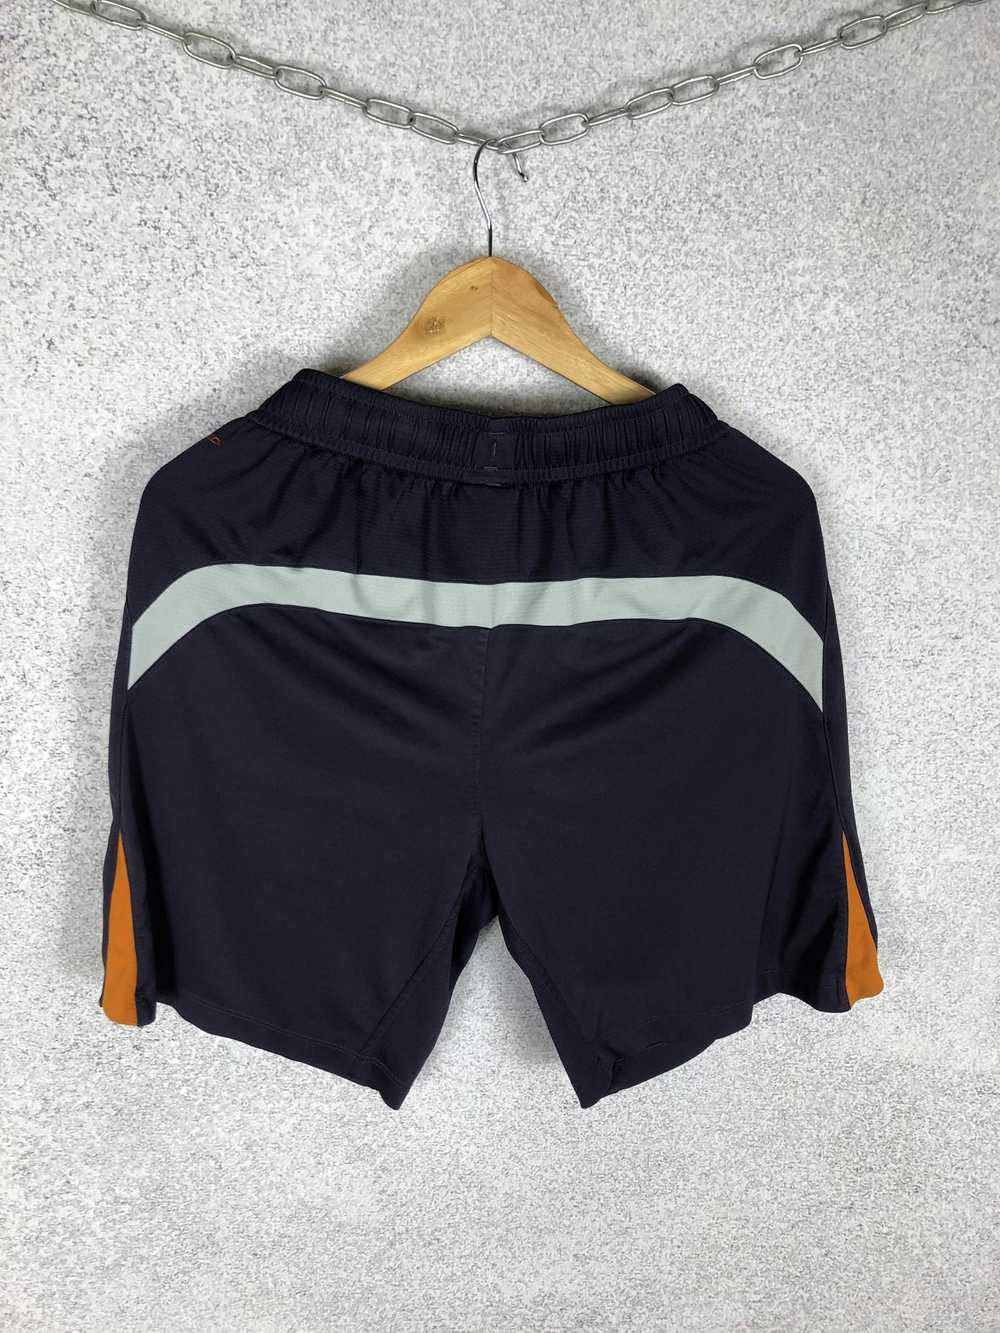 Soccer Jersey × Streetwear × Vintage Vintage FC L… - image 3